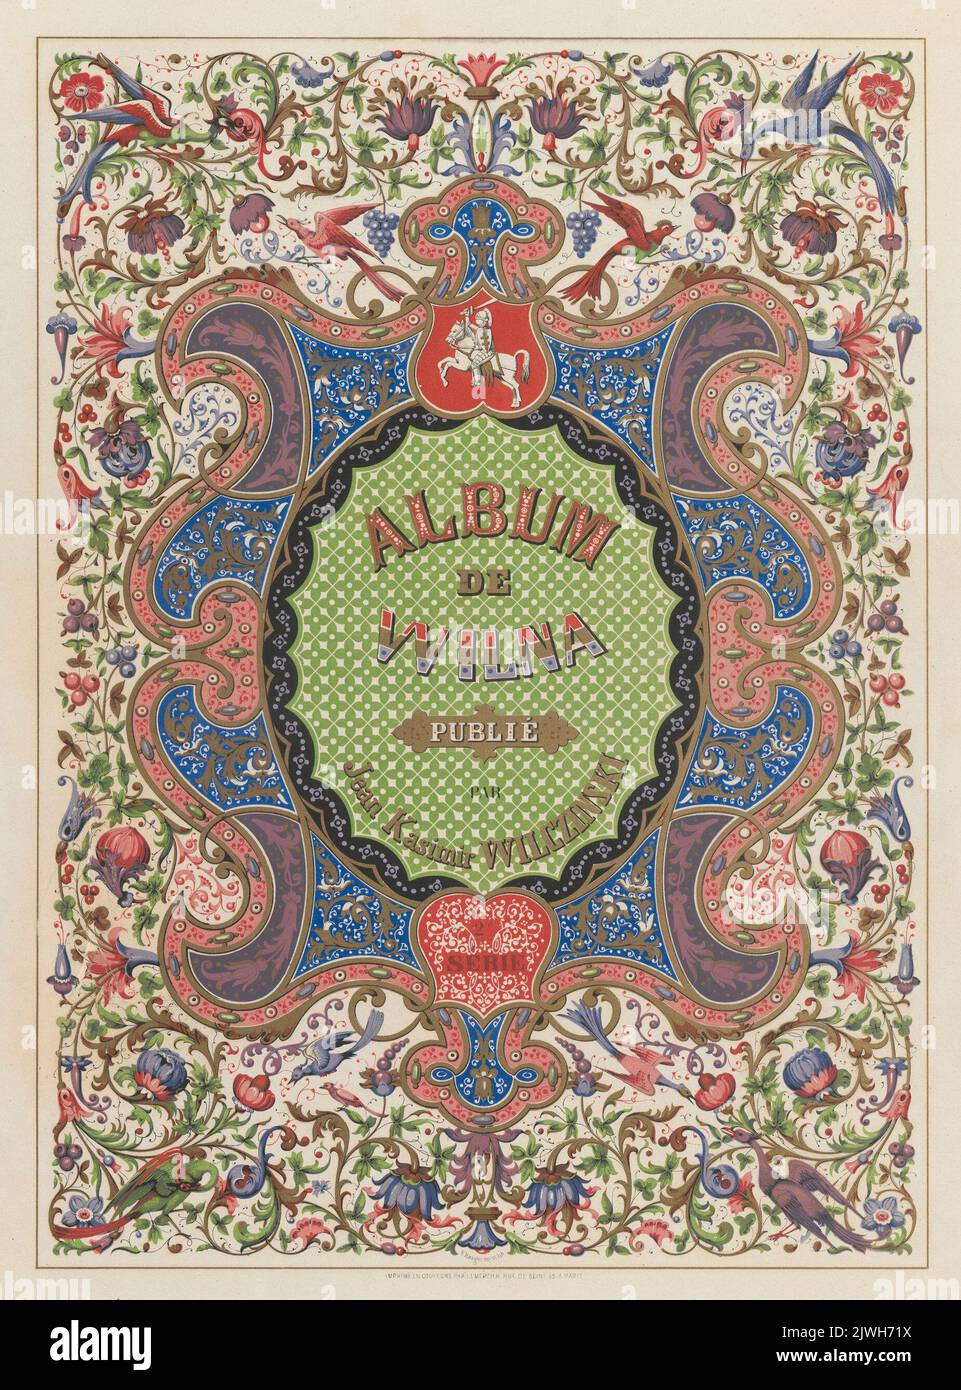 Cover with a flower and bird motif. Lemercier, Rose Joseph (Paryż ; zakład litograficzny ; 1827-post 1899), lithography atelier, Hauger, E. (fl. ca 1850), graphic artist, Wilczyński, Jan Kazimierz (1806-1885), publisher Stock Photo